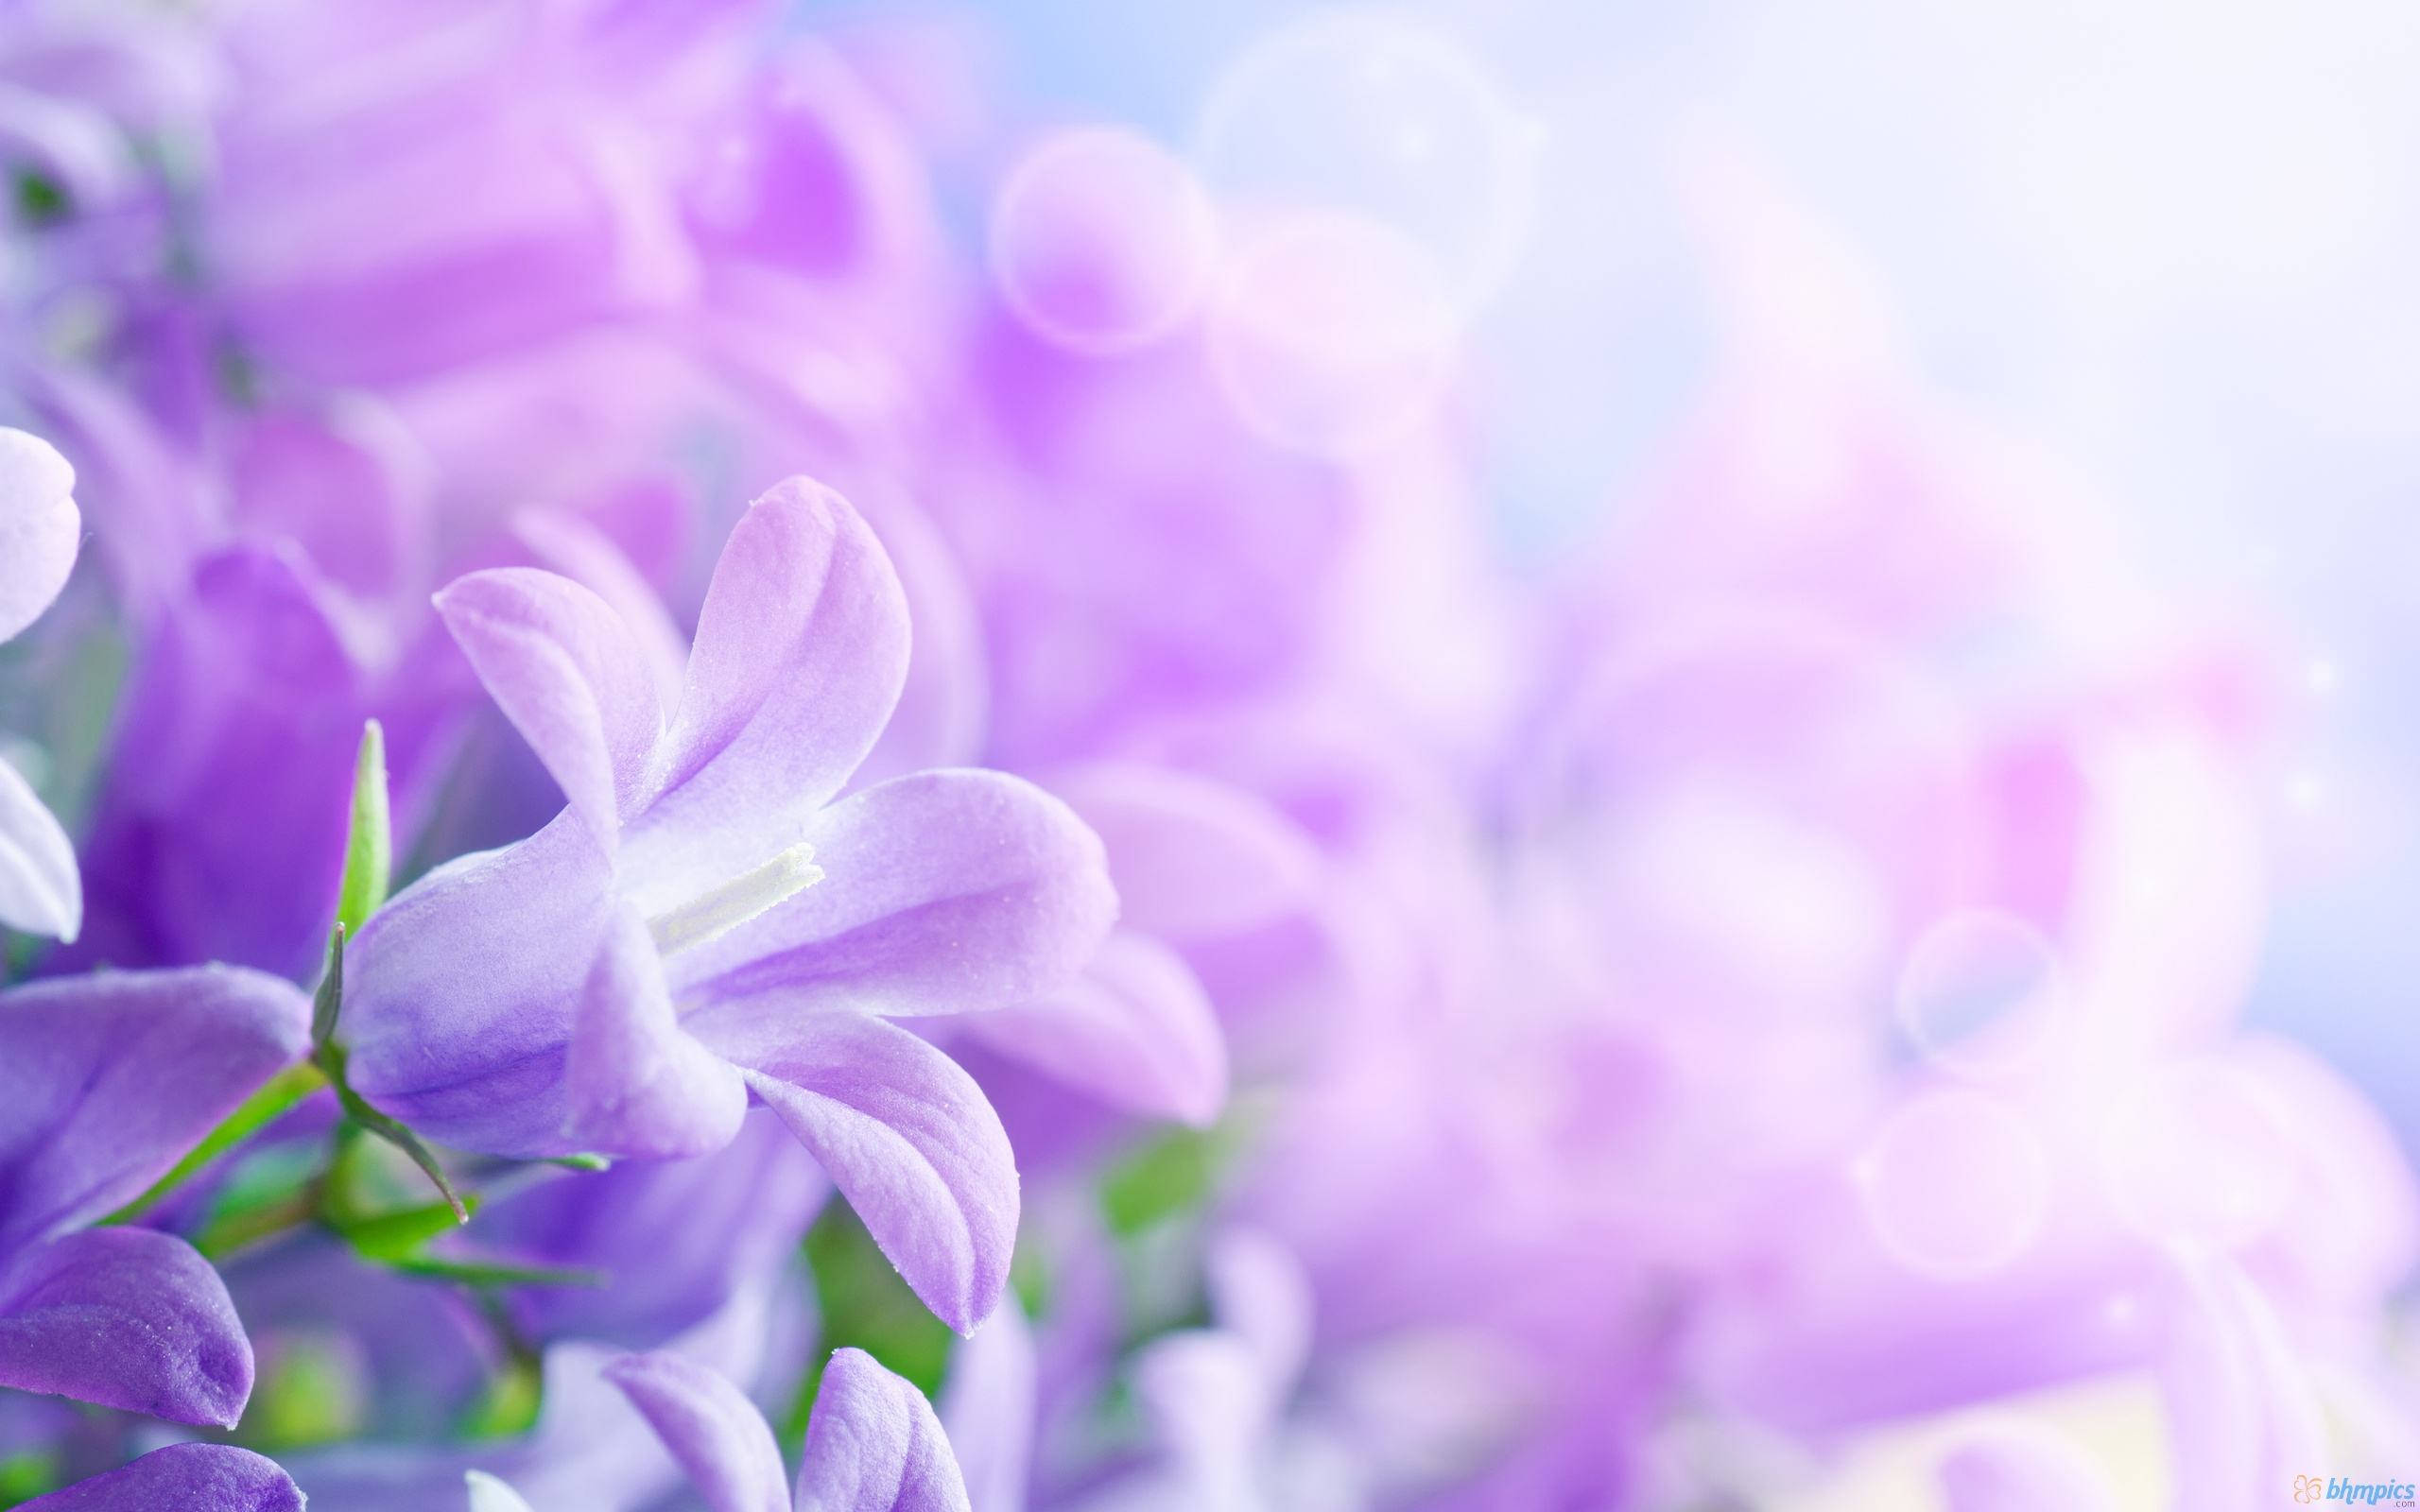 hd purple flower image